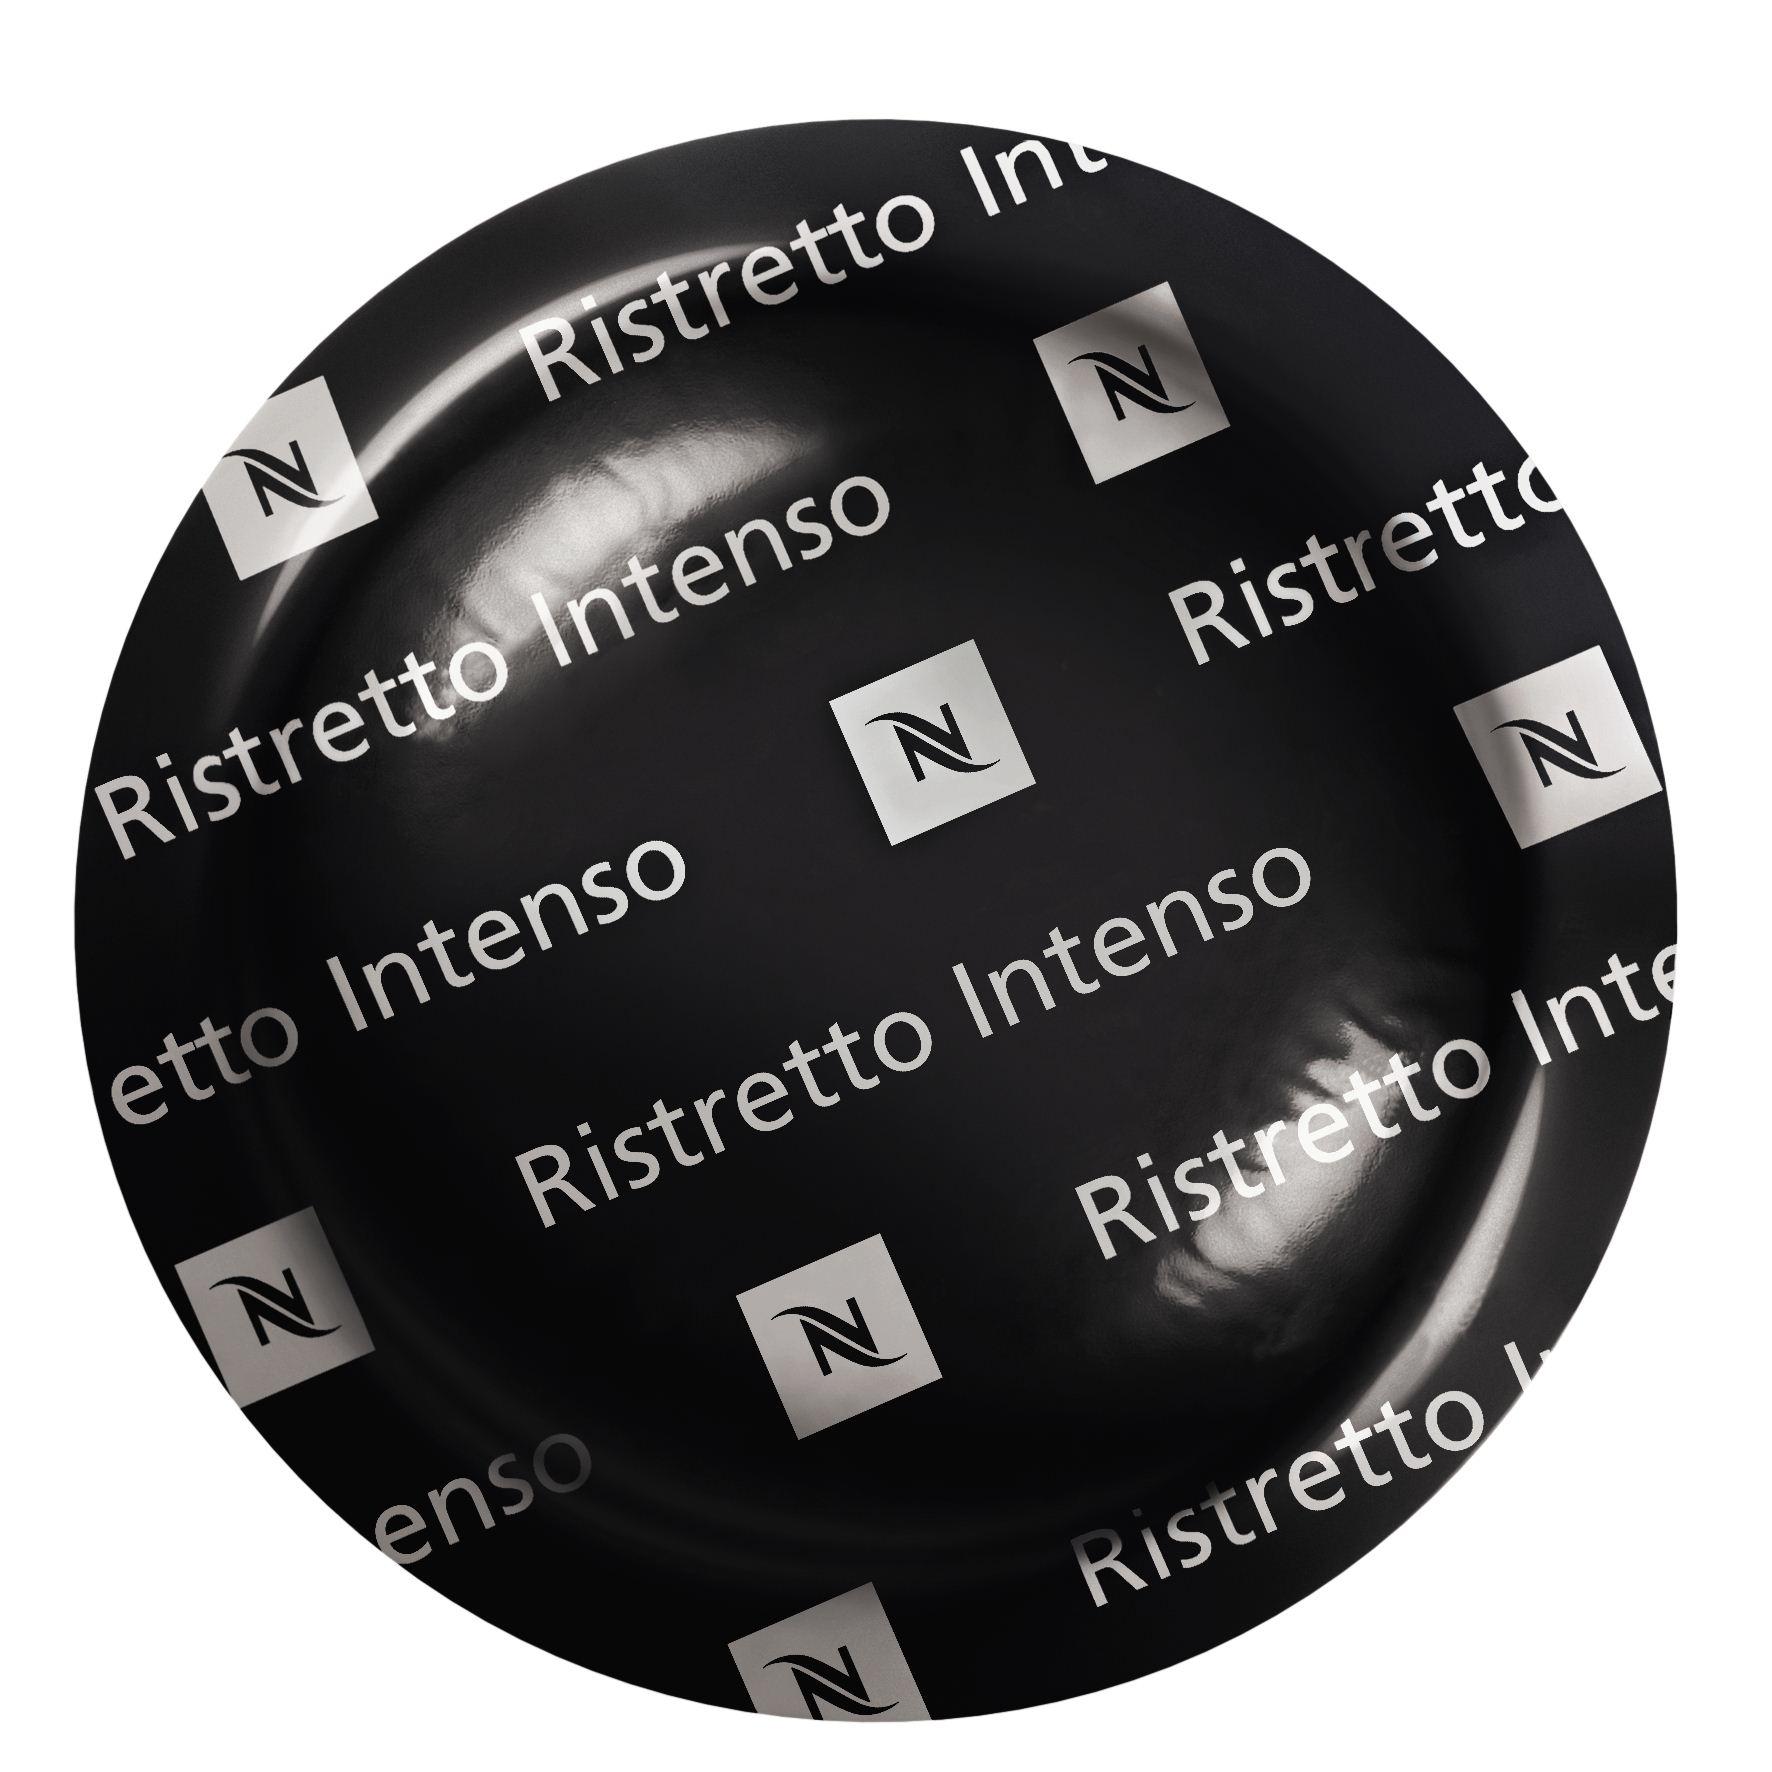 B2B RISTRETTO INTENSO | Nestlé Nespresso